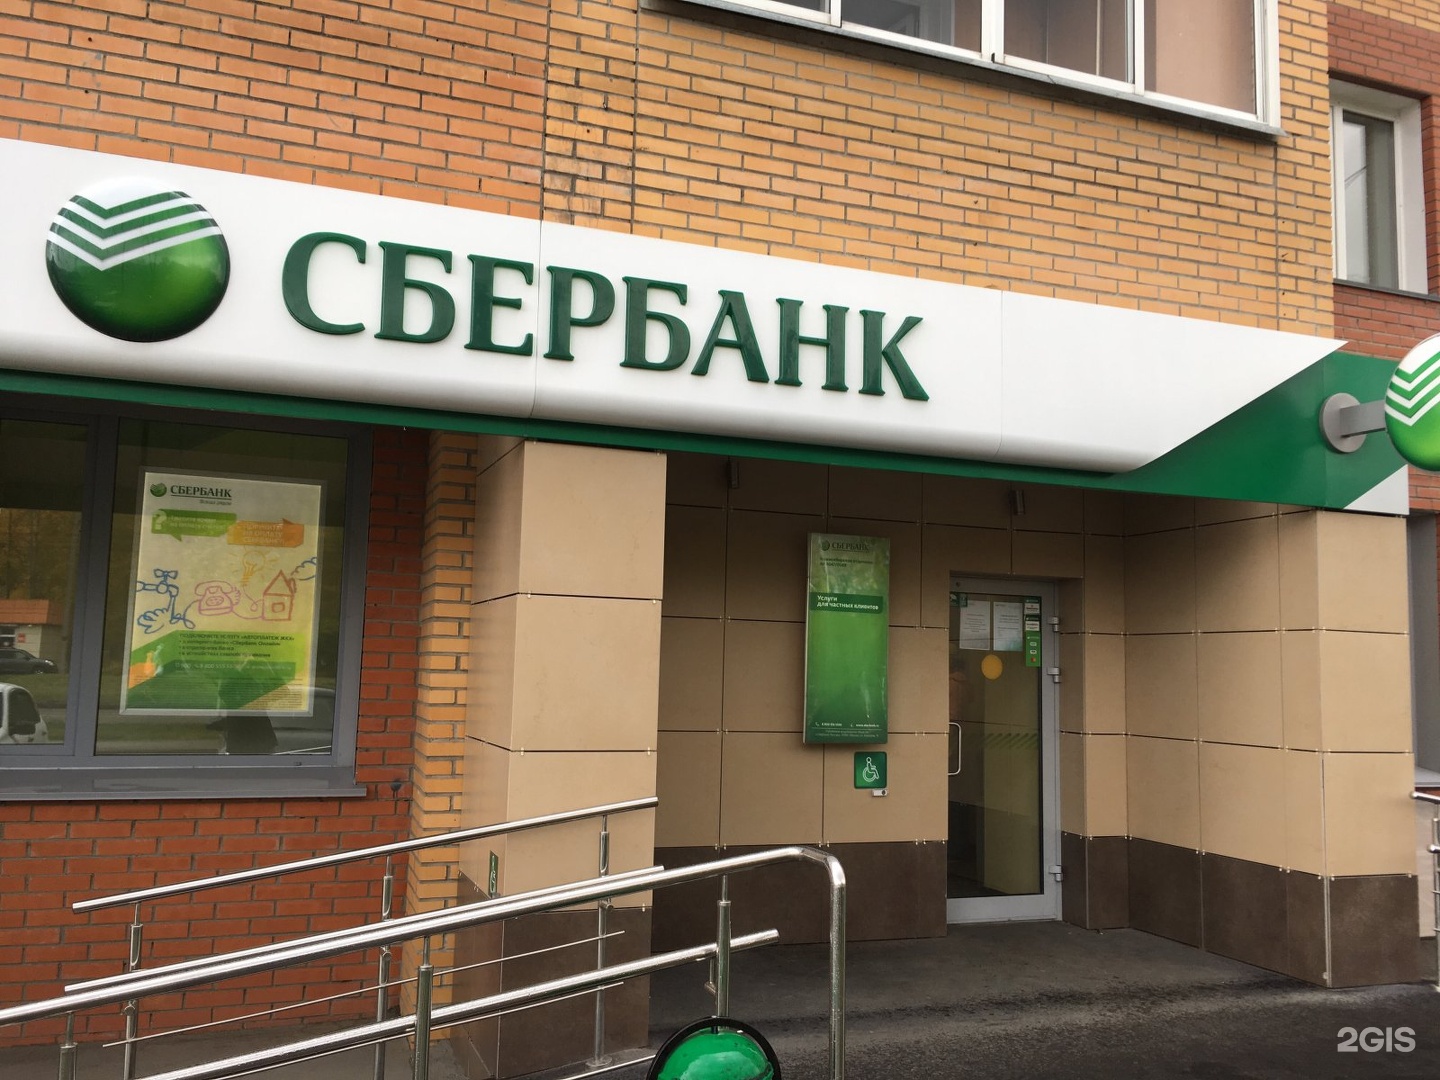 Банкоматы сбербанка иркутск